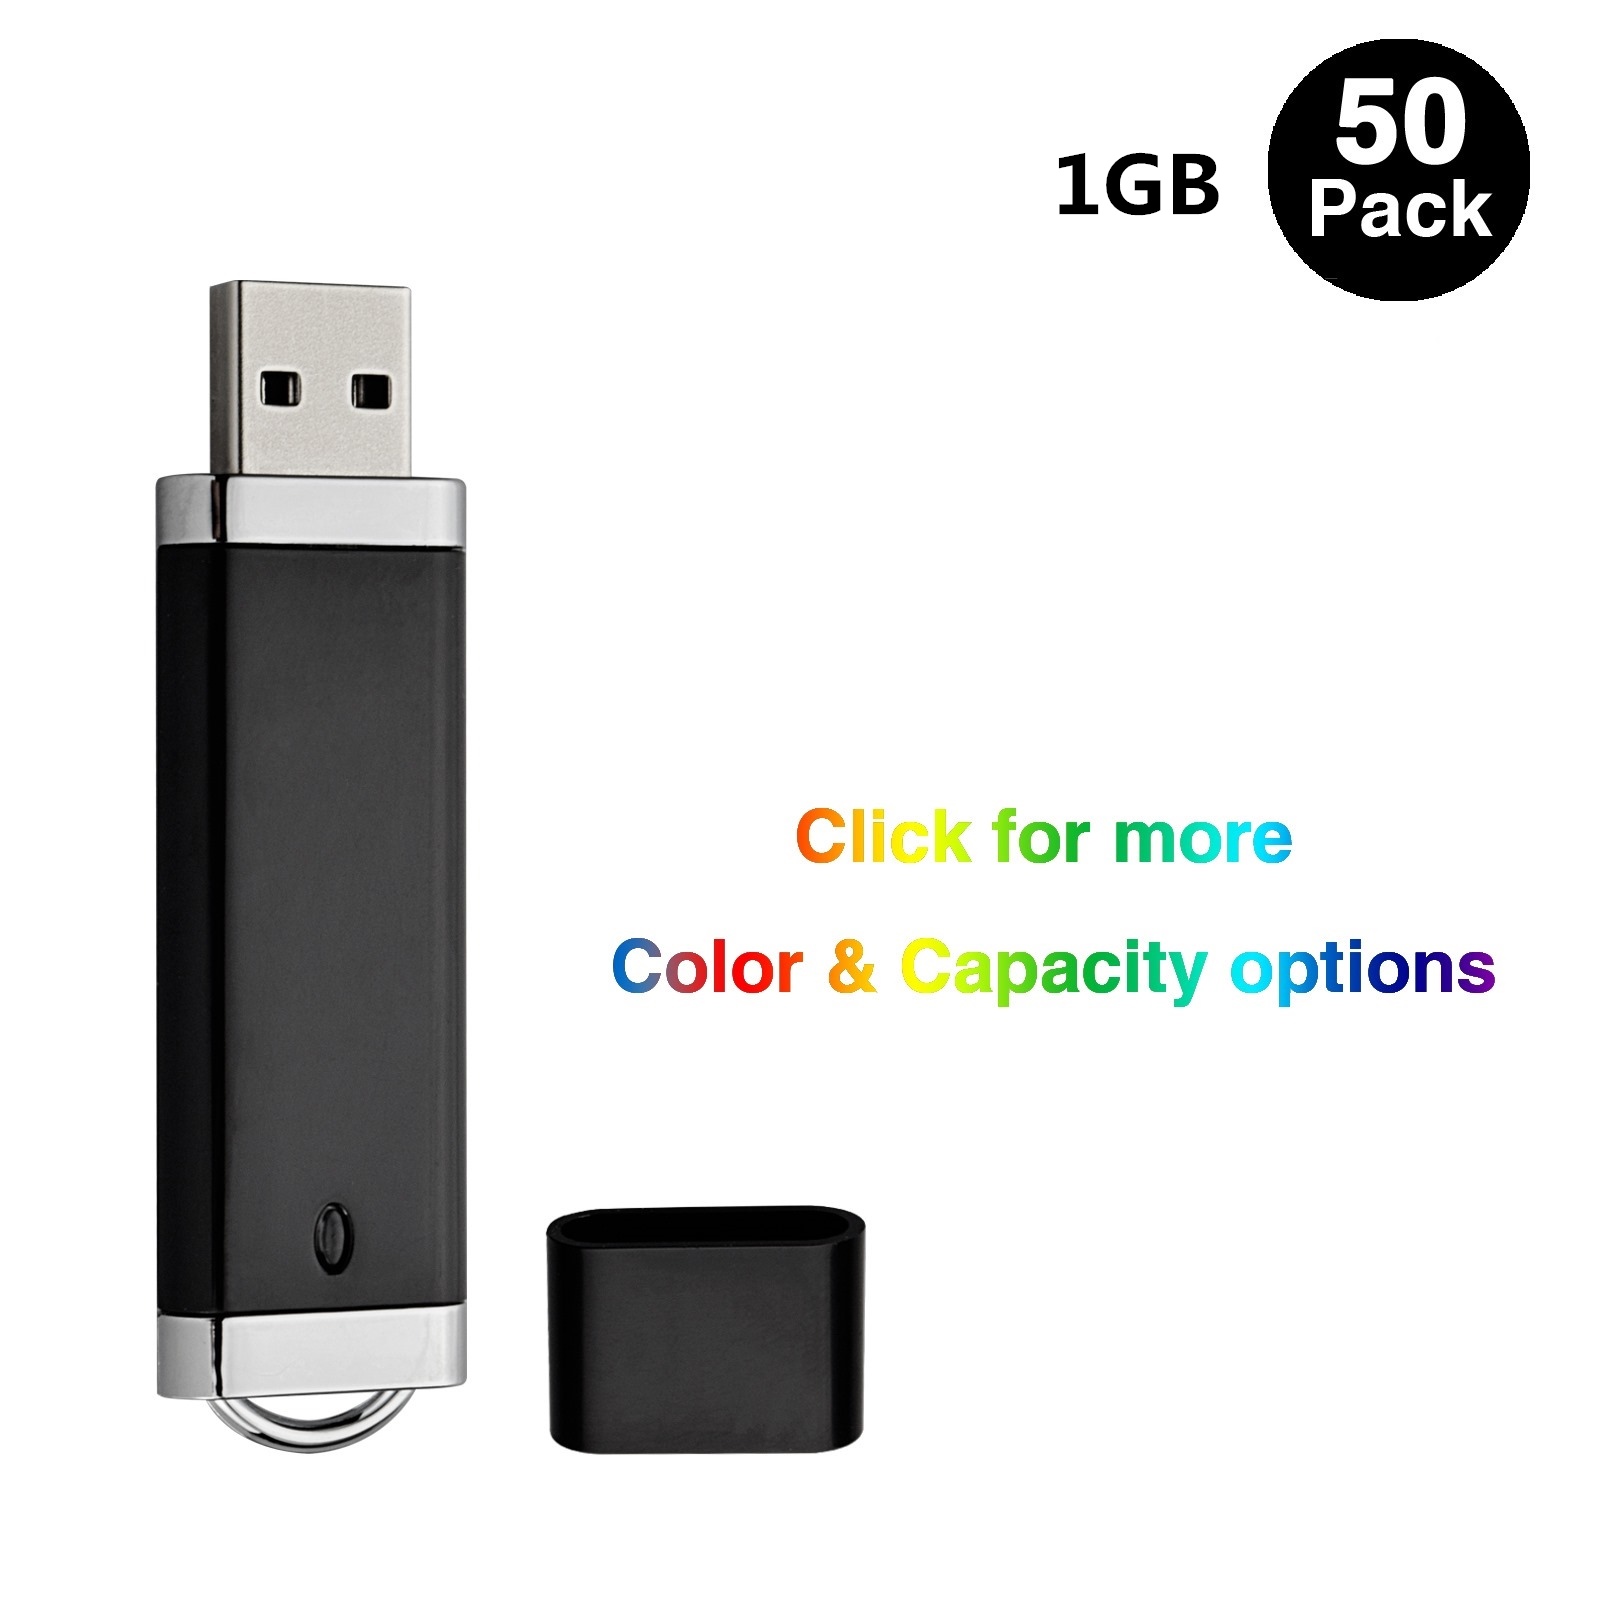 Bulk 50PCS 1GB USB 2.0 Flash Drives Lighter Design Flash Pen Drive Memory Stick Thumb Storage for Computer Laptop LED Indicator Multi-colors